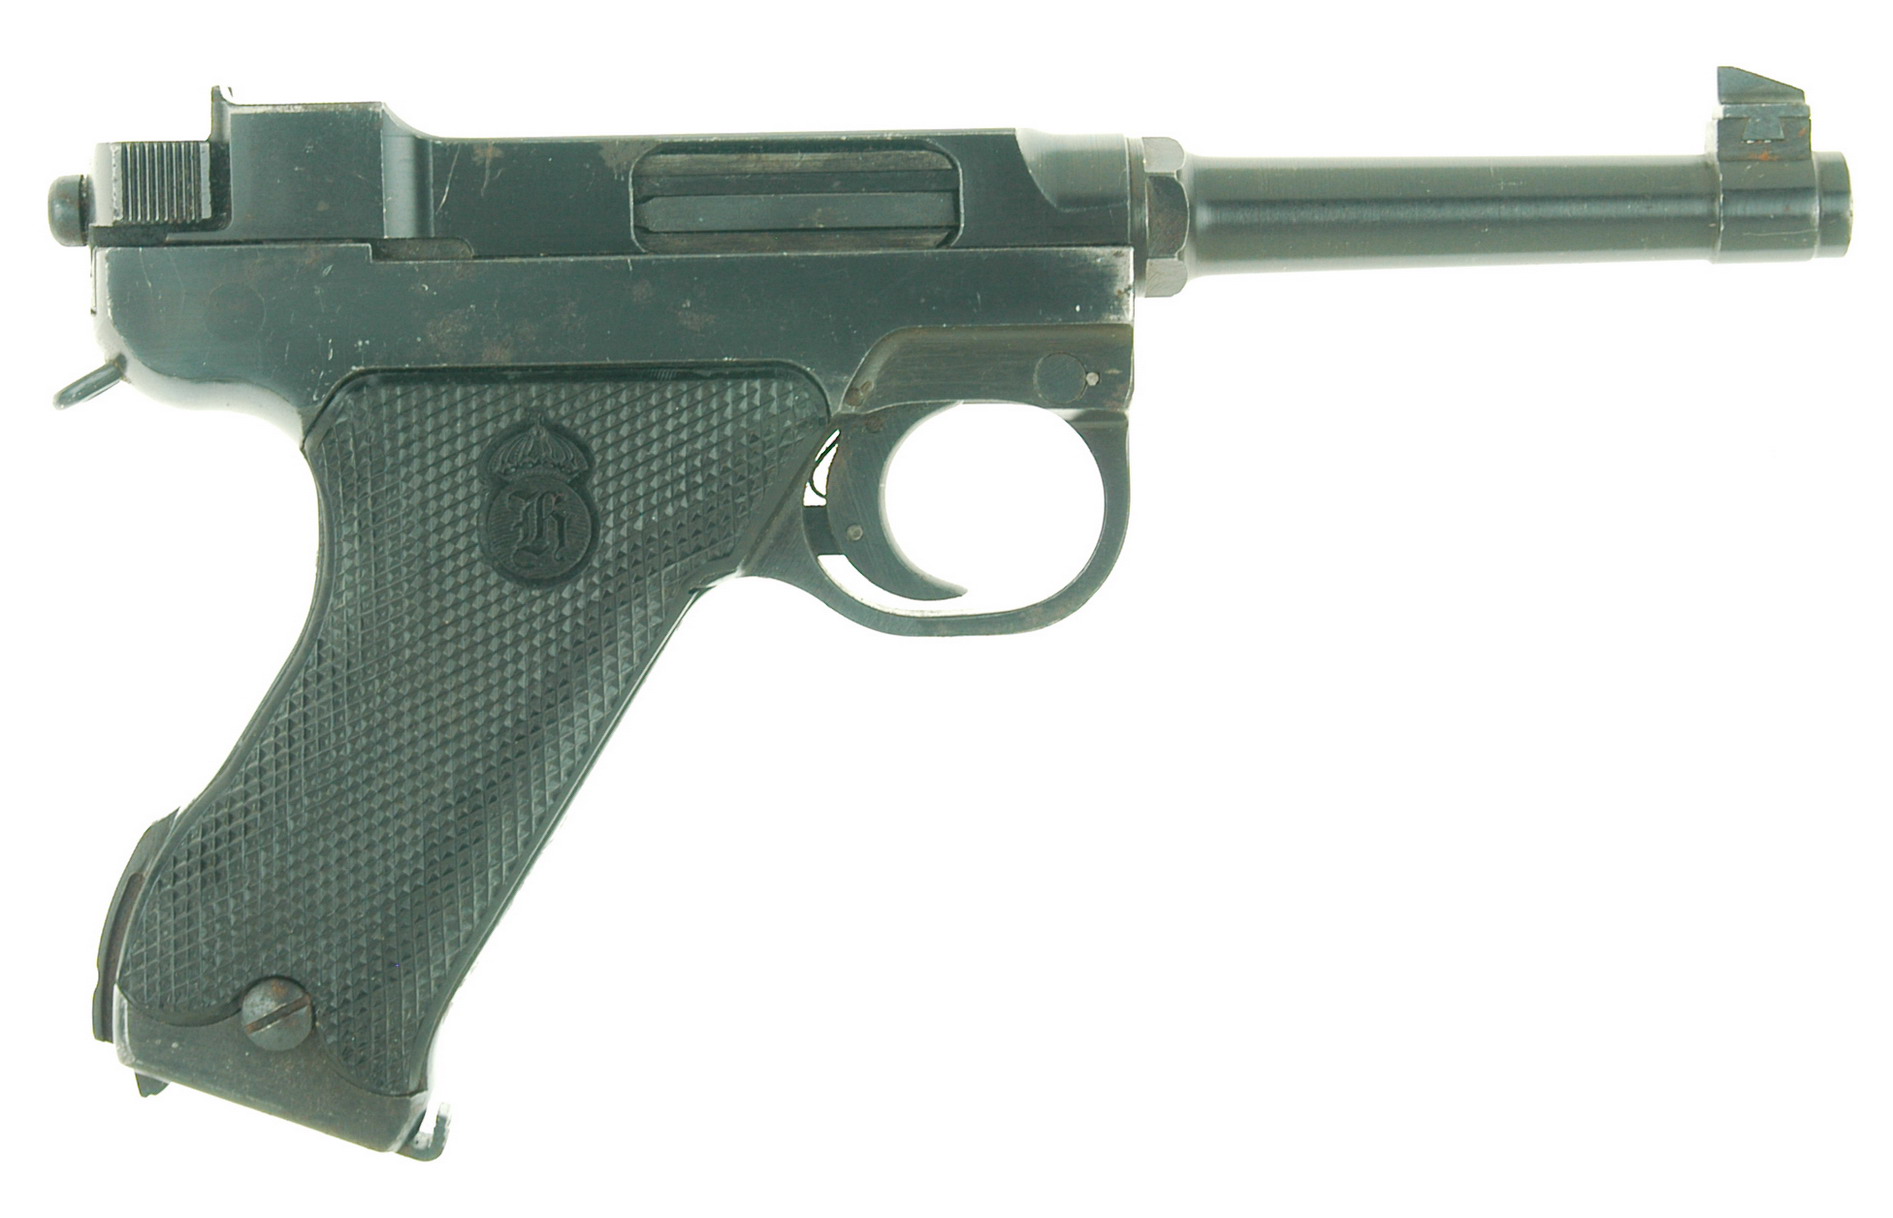 Xxxx D M4 - The Husqvarna M 40 Pistol